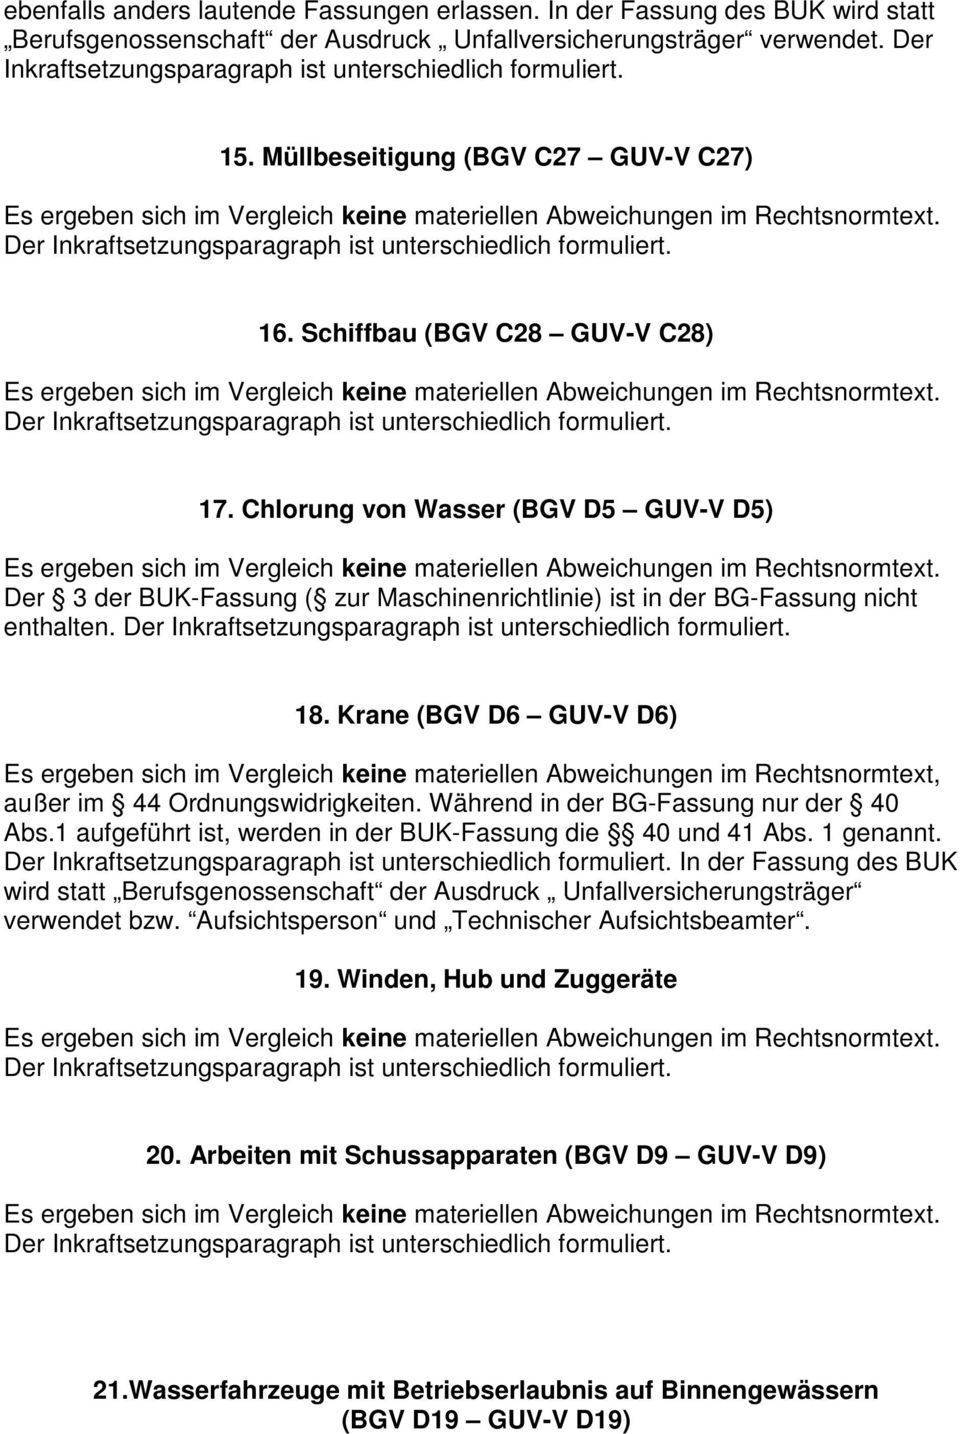 Chlorung von Wasser (BGV D5 GUV-V D5) Der 3 der BUK-Fassung ( zur Maschinenrichtlinie) ist in der BG-Fassung nicht enthalten. 18. Krane (BGV D6 GUV-V D6) außer im 44 Ordnungswidrigkeiten.